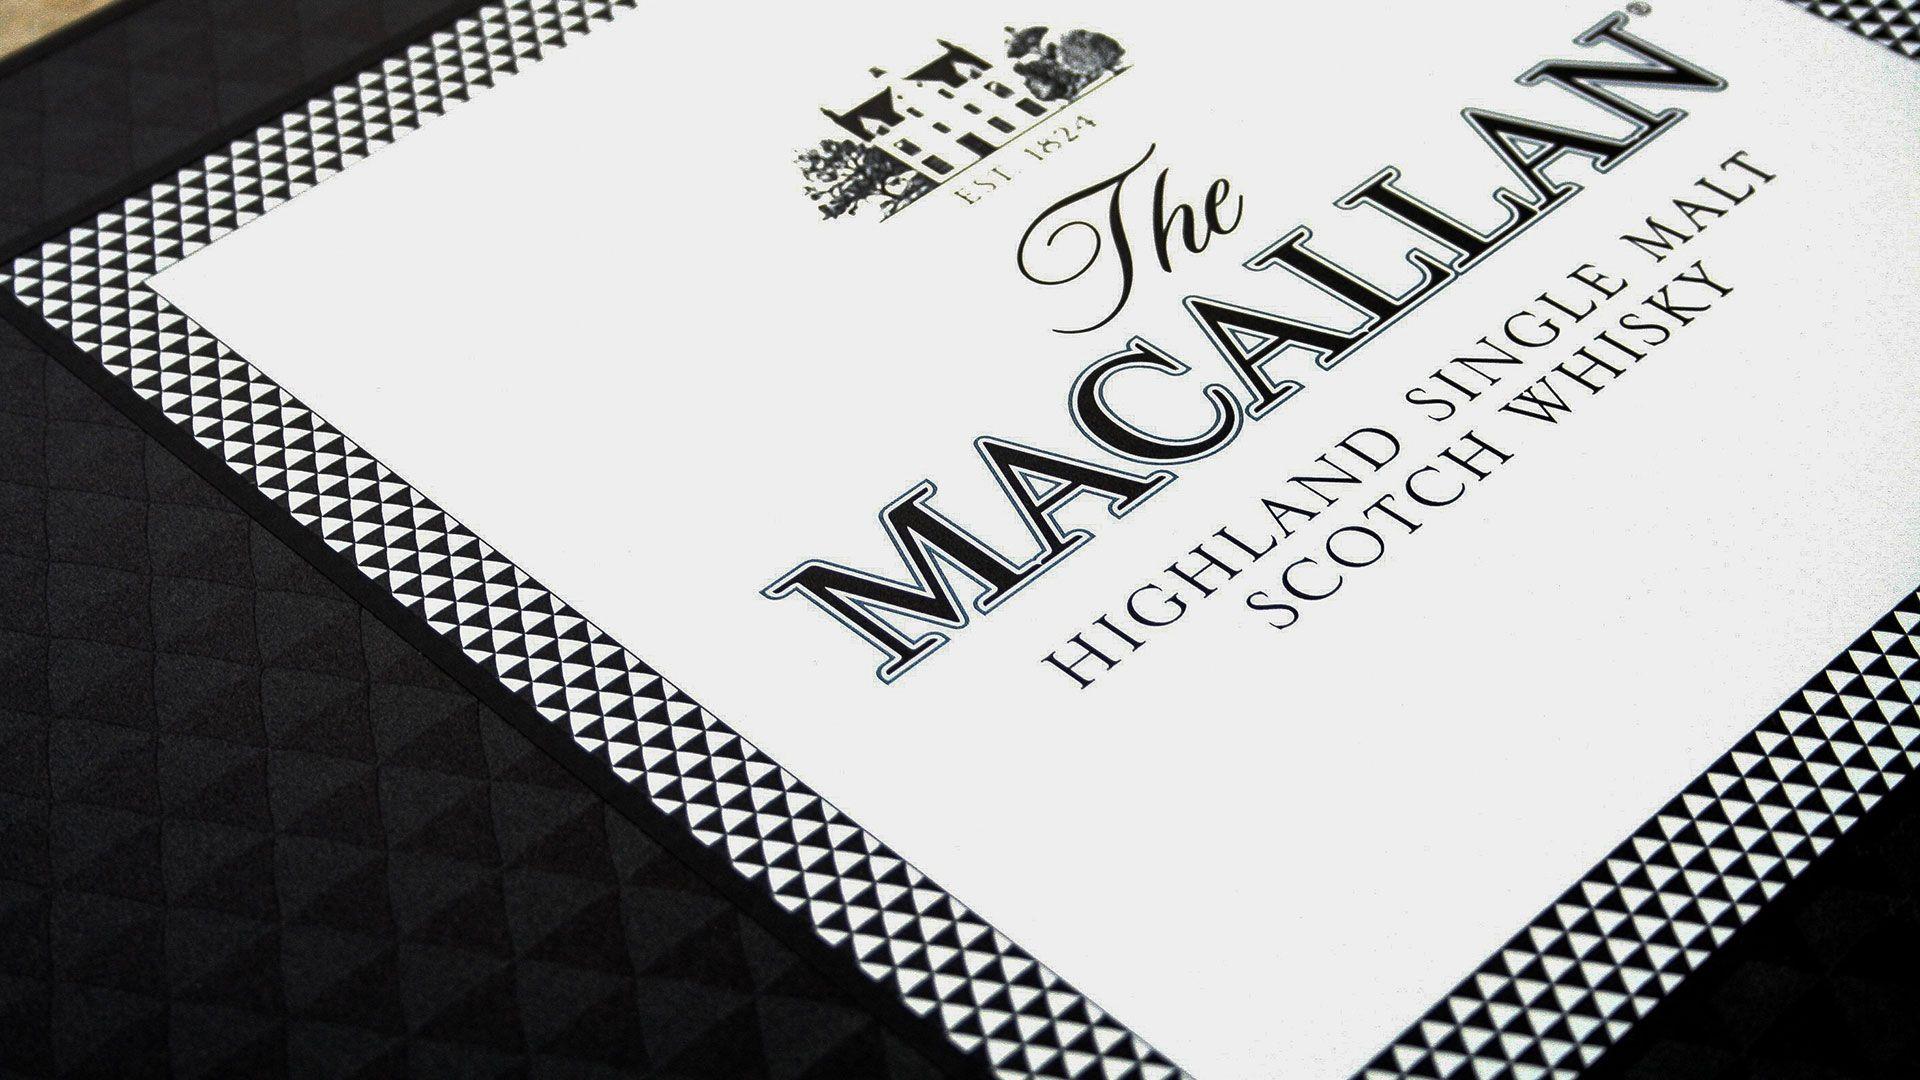 Macallan Logo - The Macallan